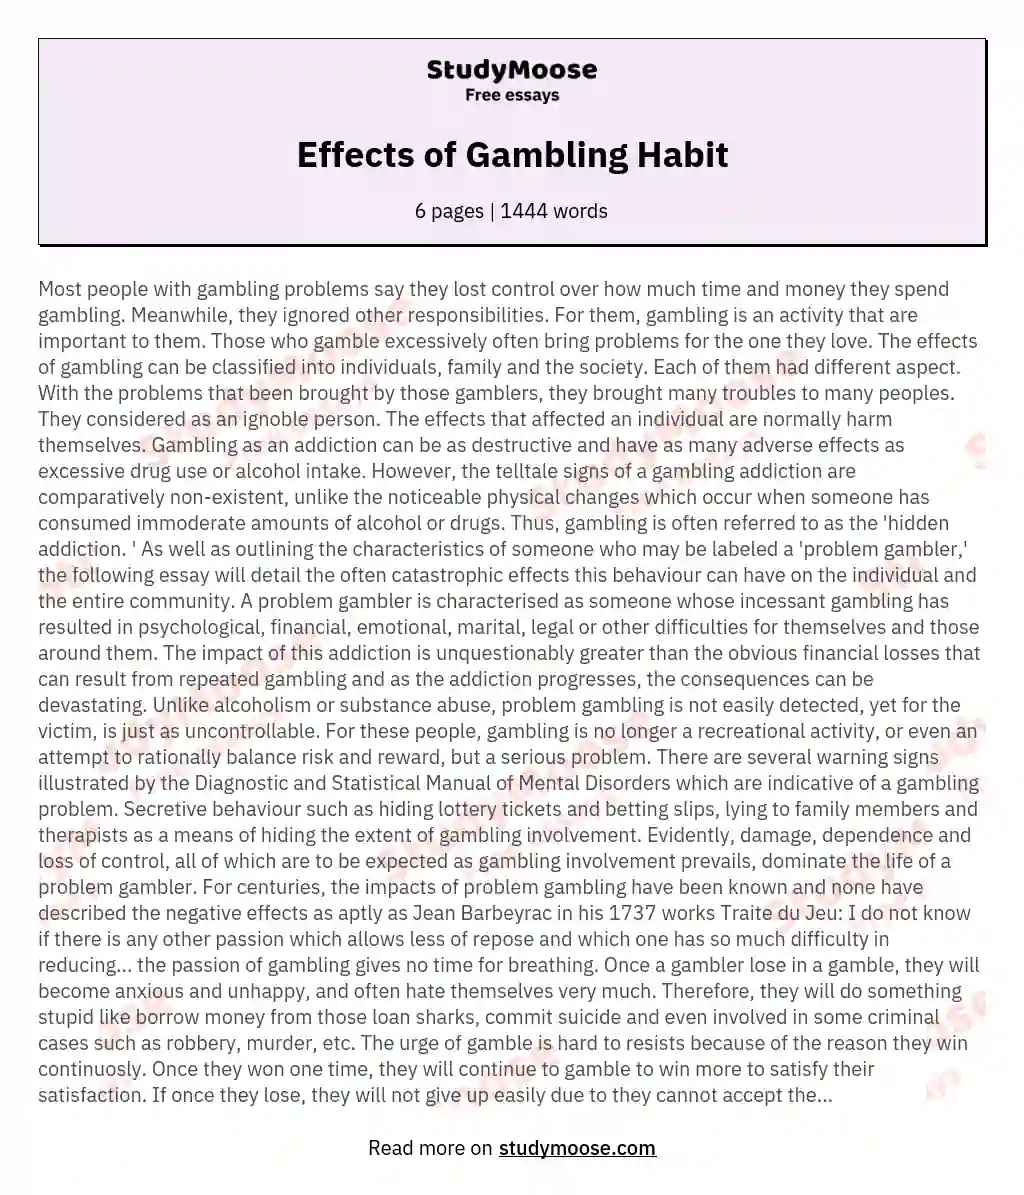 Effects of Gambling Habit essay